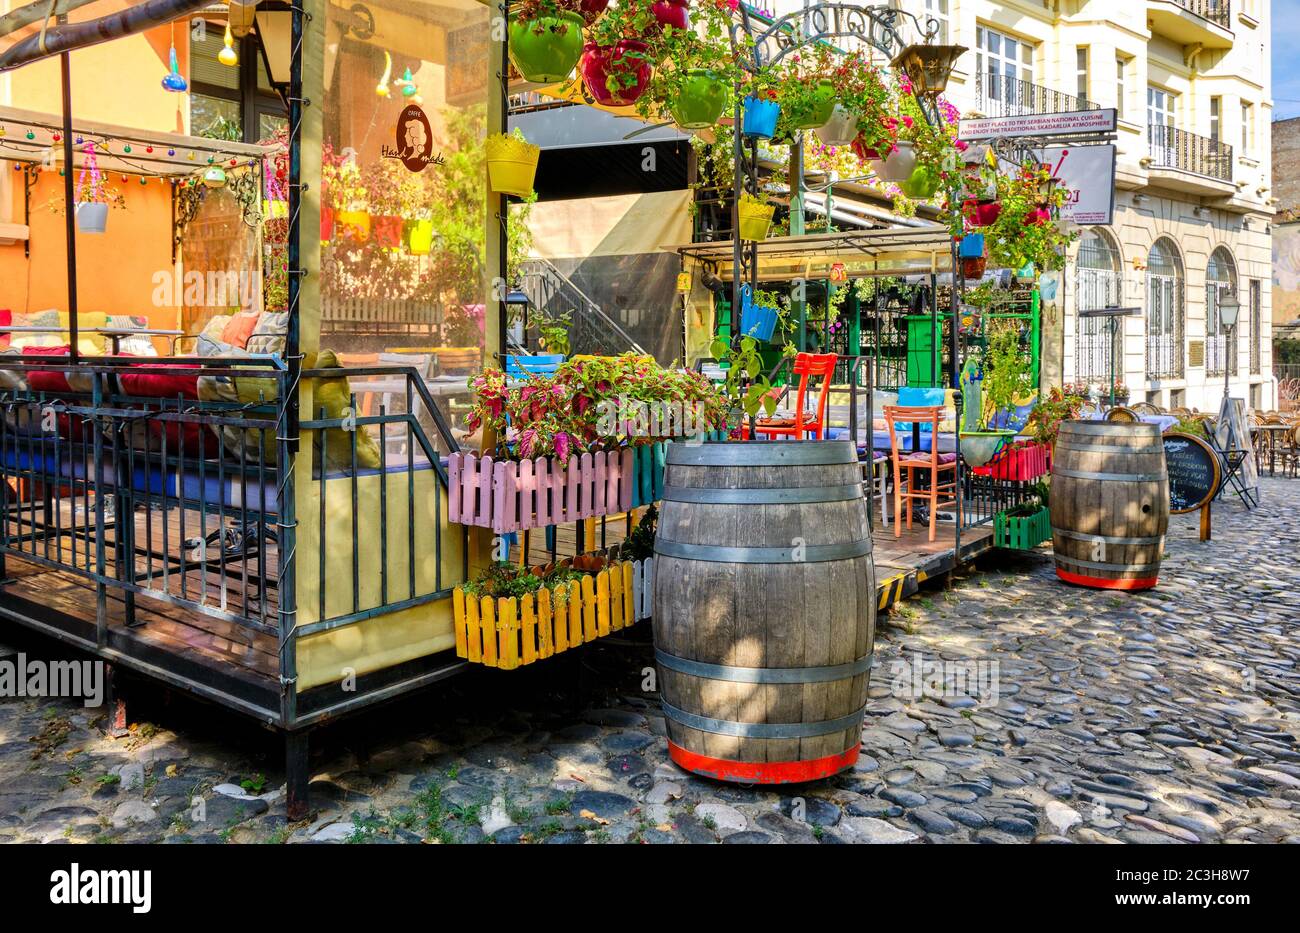 Belgrad / Serbien - 23. September 2018: Skadarlija Straße, alte böhmische Straße mit vielen berühmten Restaurants der serbischen nationalen Küche in Belgrad, c Stockfoto